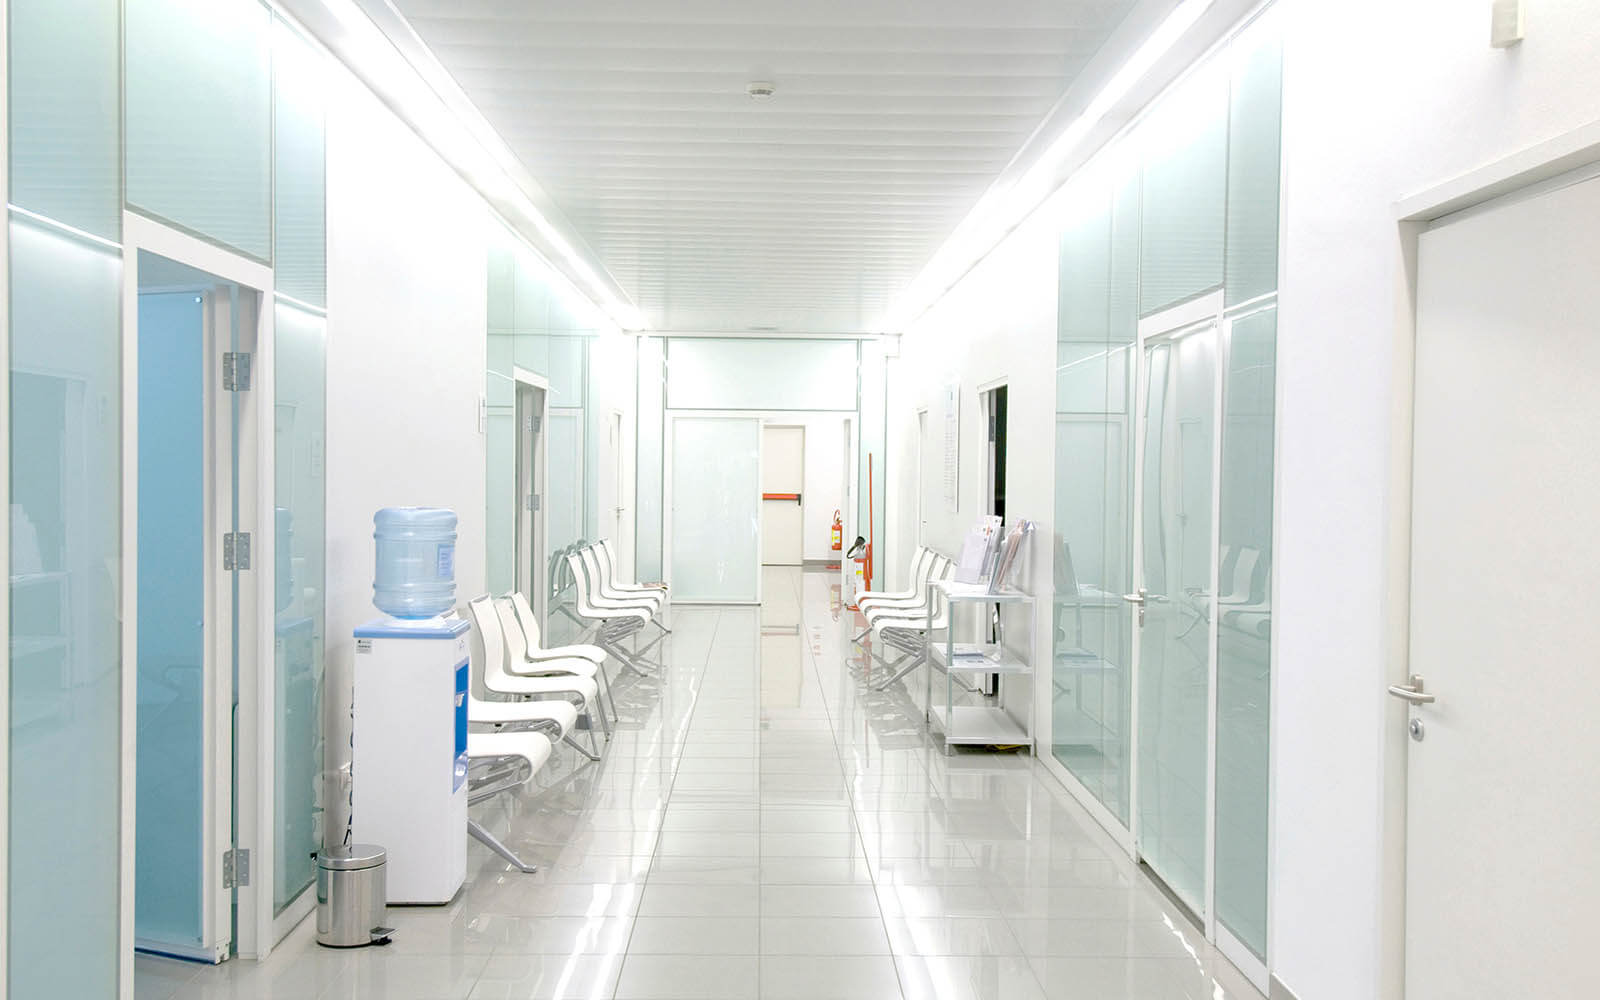 Krankenhausreform: 20 Prozent weniger Kliniken in 10 Jahren